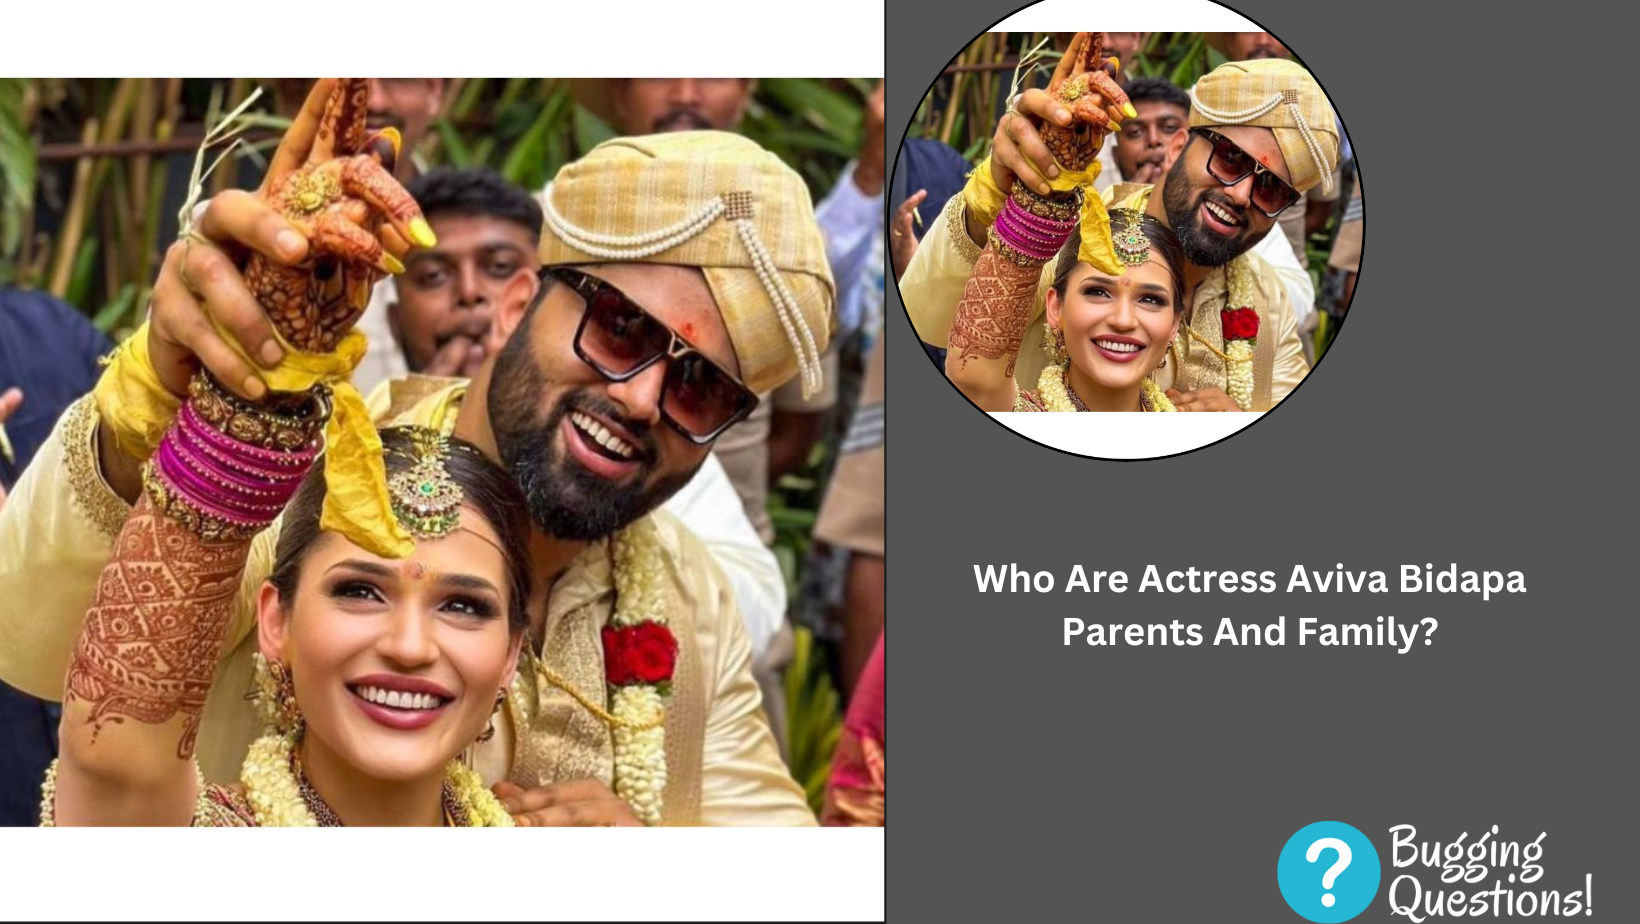 Who Are Actress Aviva Bidapa Parents And Family?